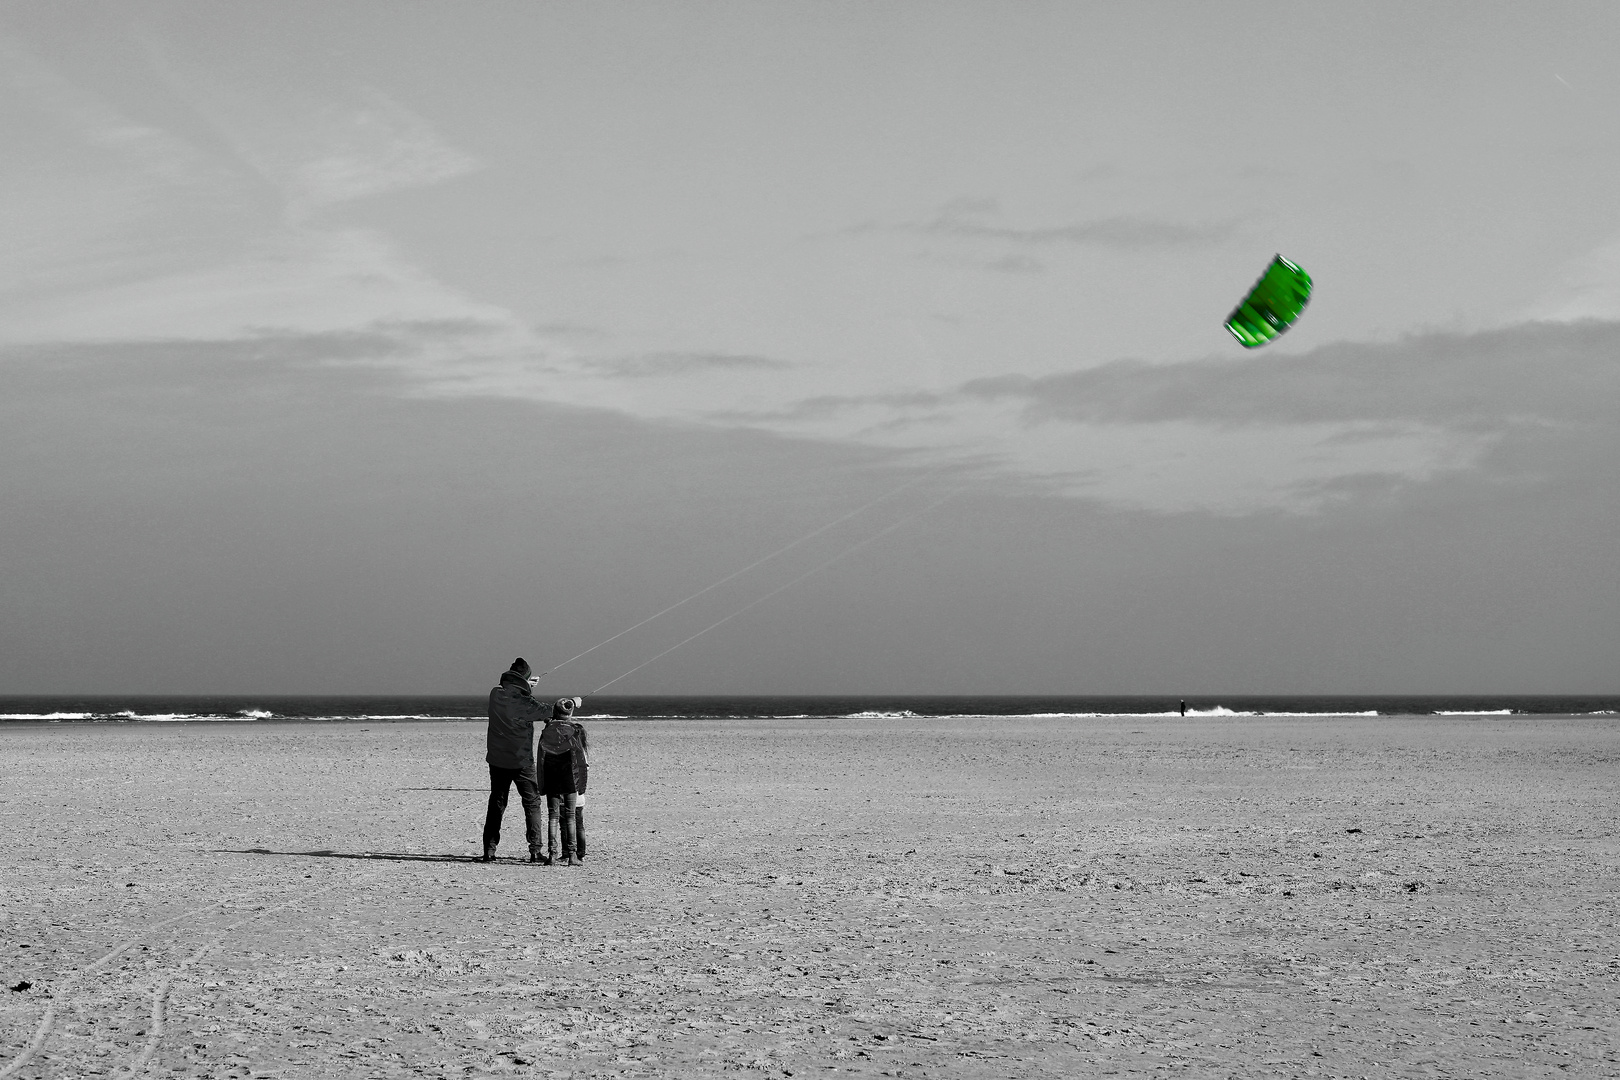 High flying kite